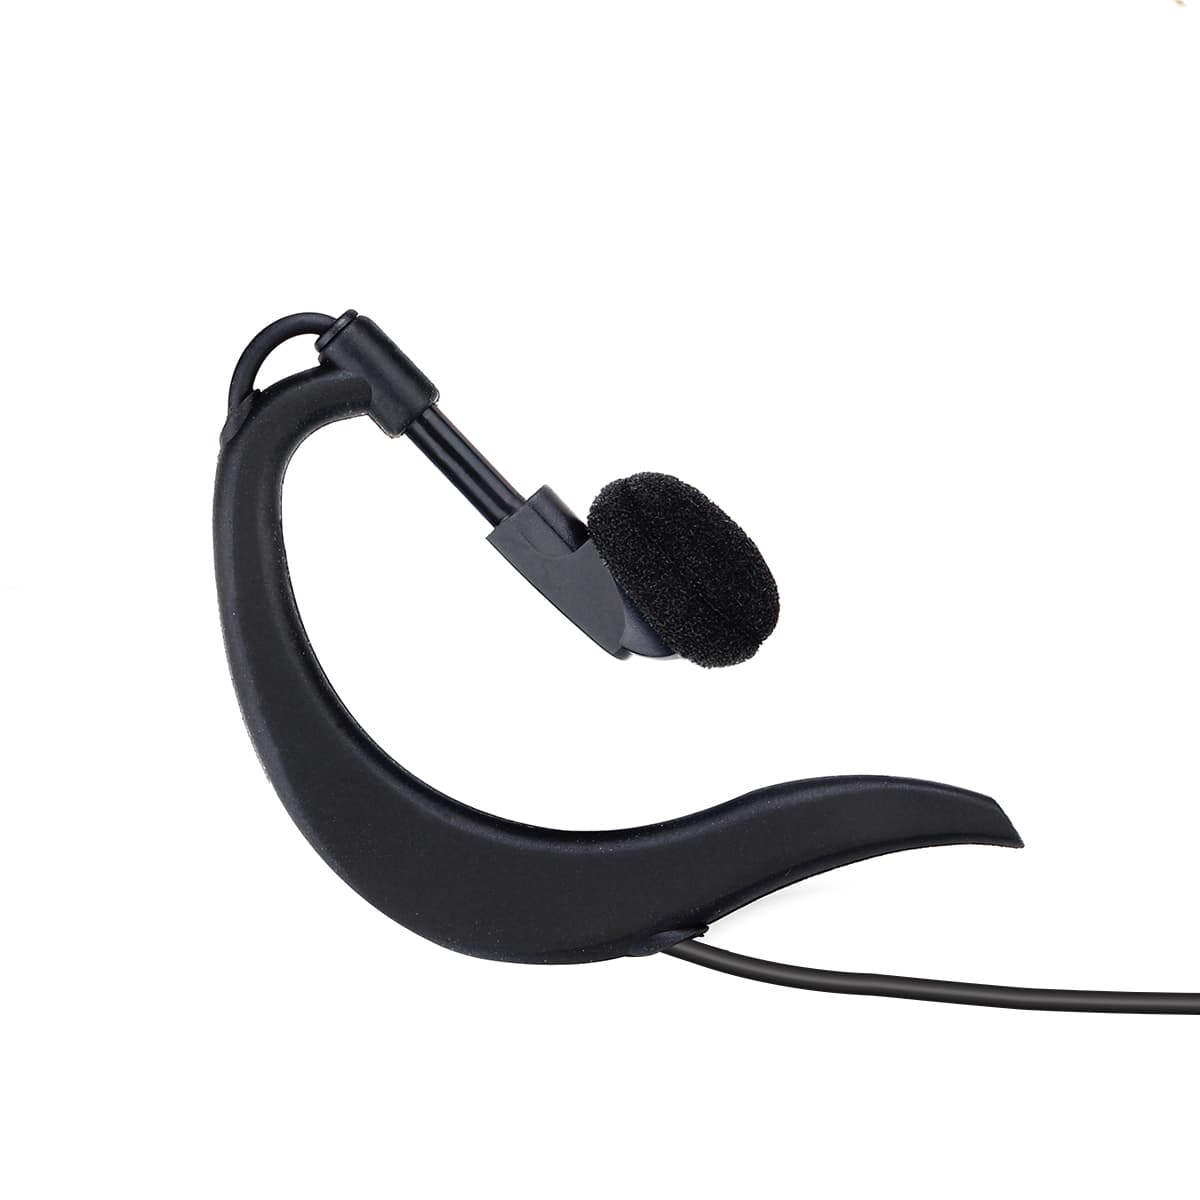 Retevis EEK006 G-Shaped Ear Hook